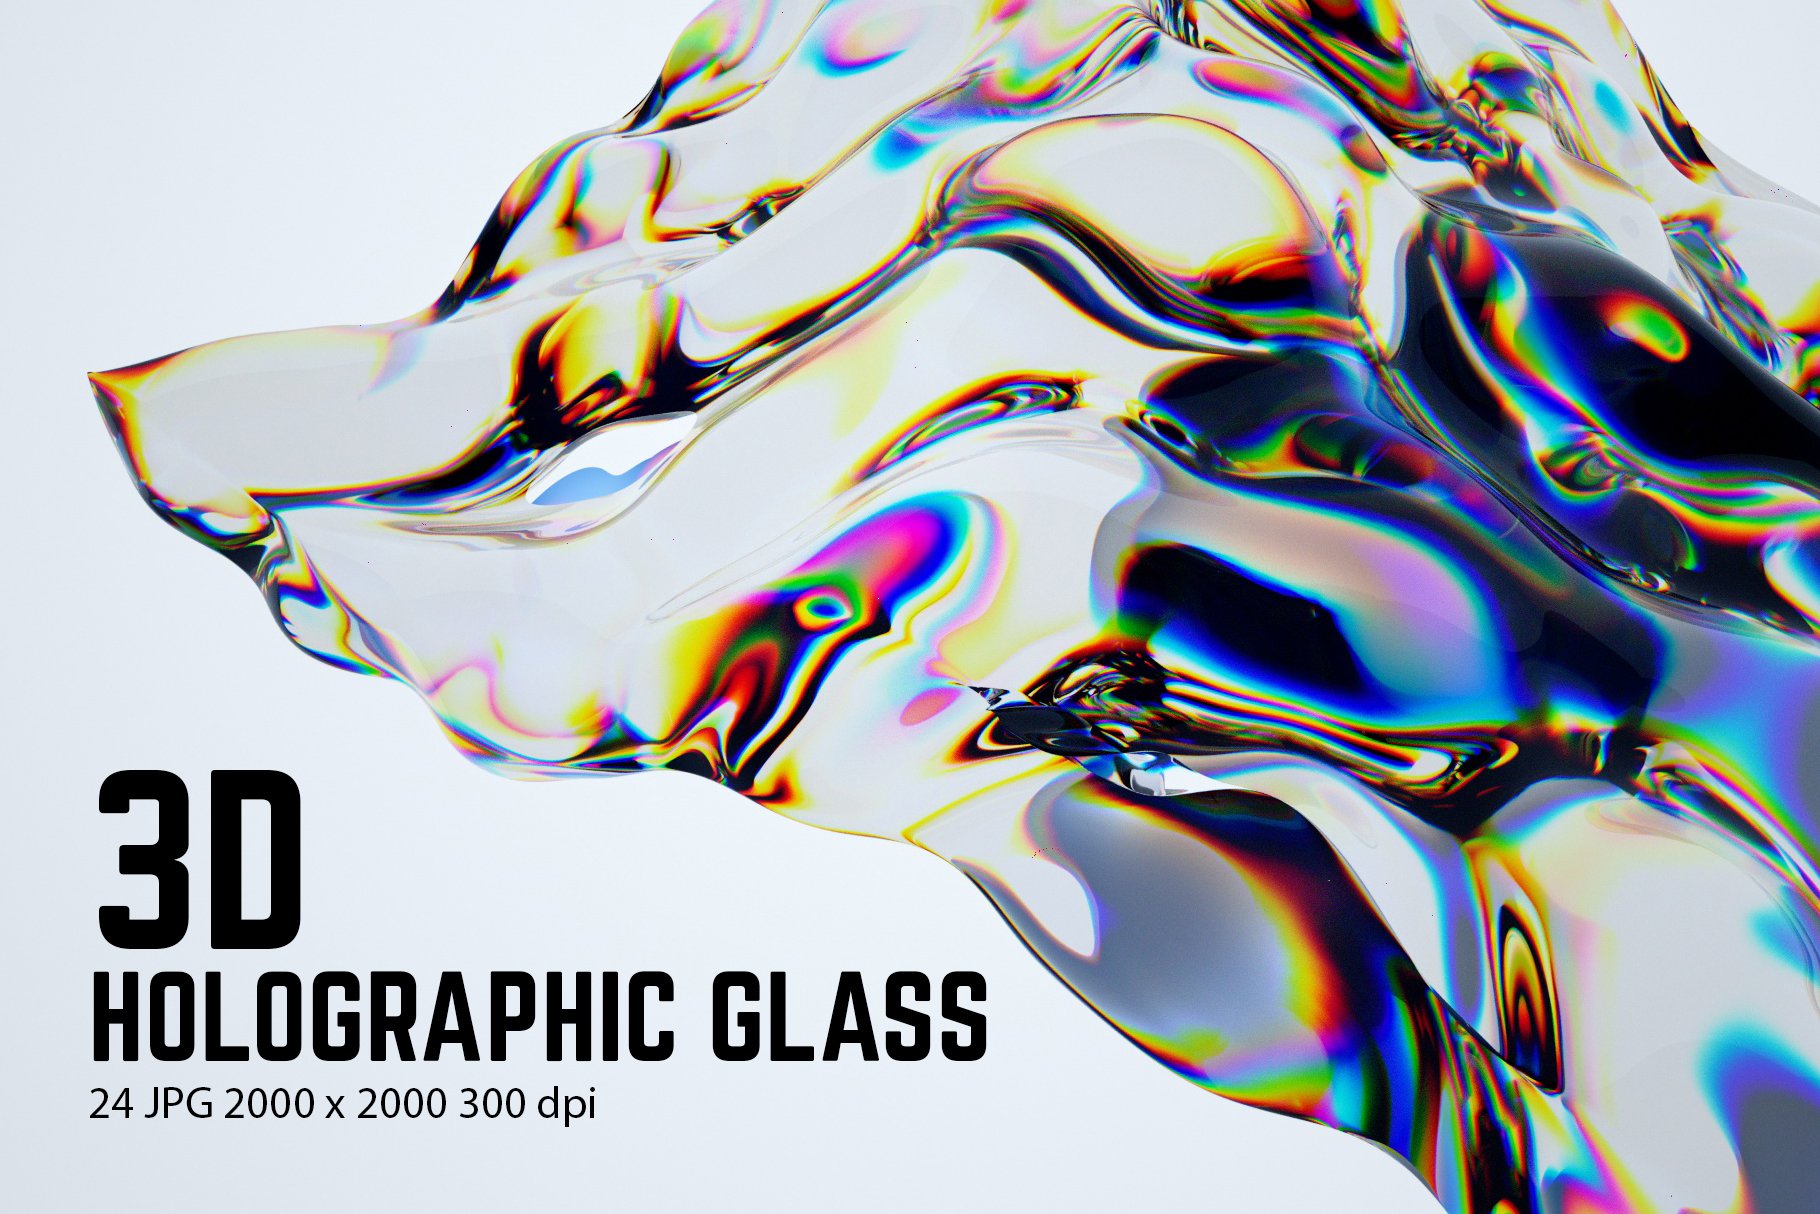 全息玻璃材质标题海报广告背景纹理 3D Holographic Glass – Texture Pack 图片素材 第1张